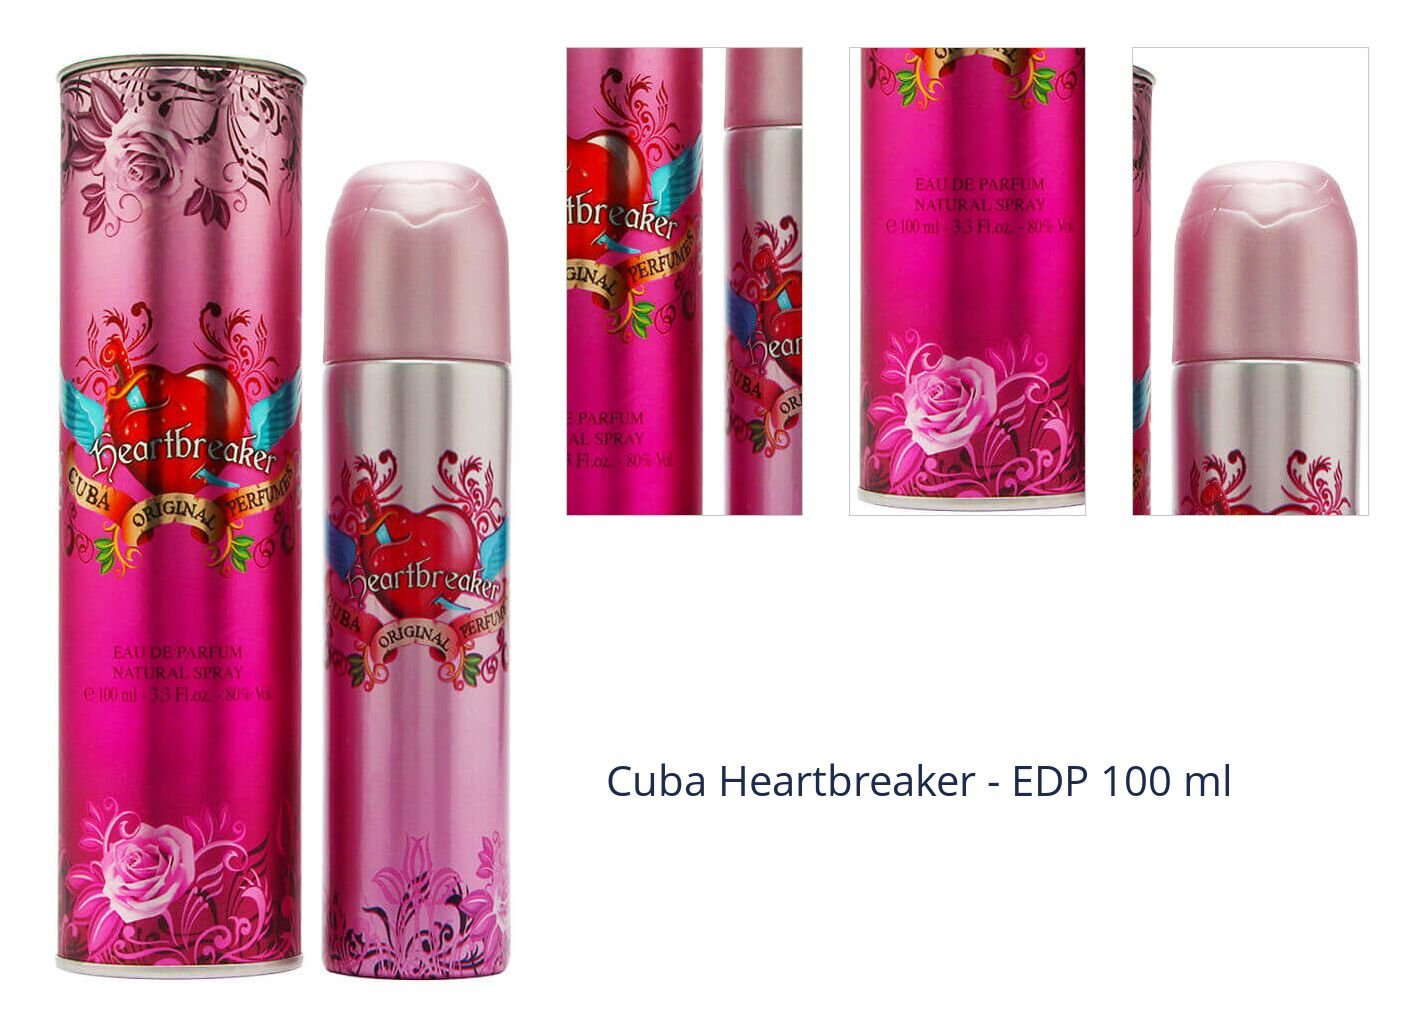 Cuba Heartbreaker - EDP 100 ml 1